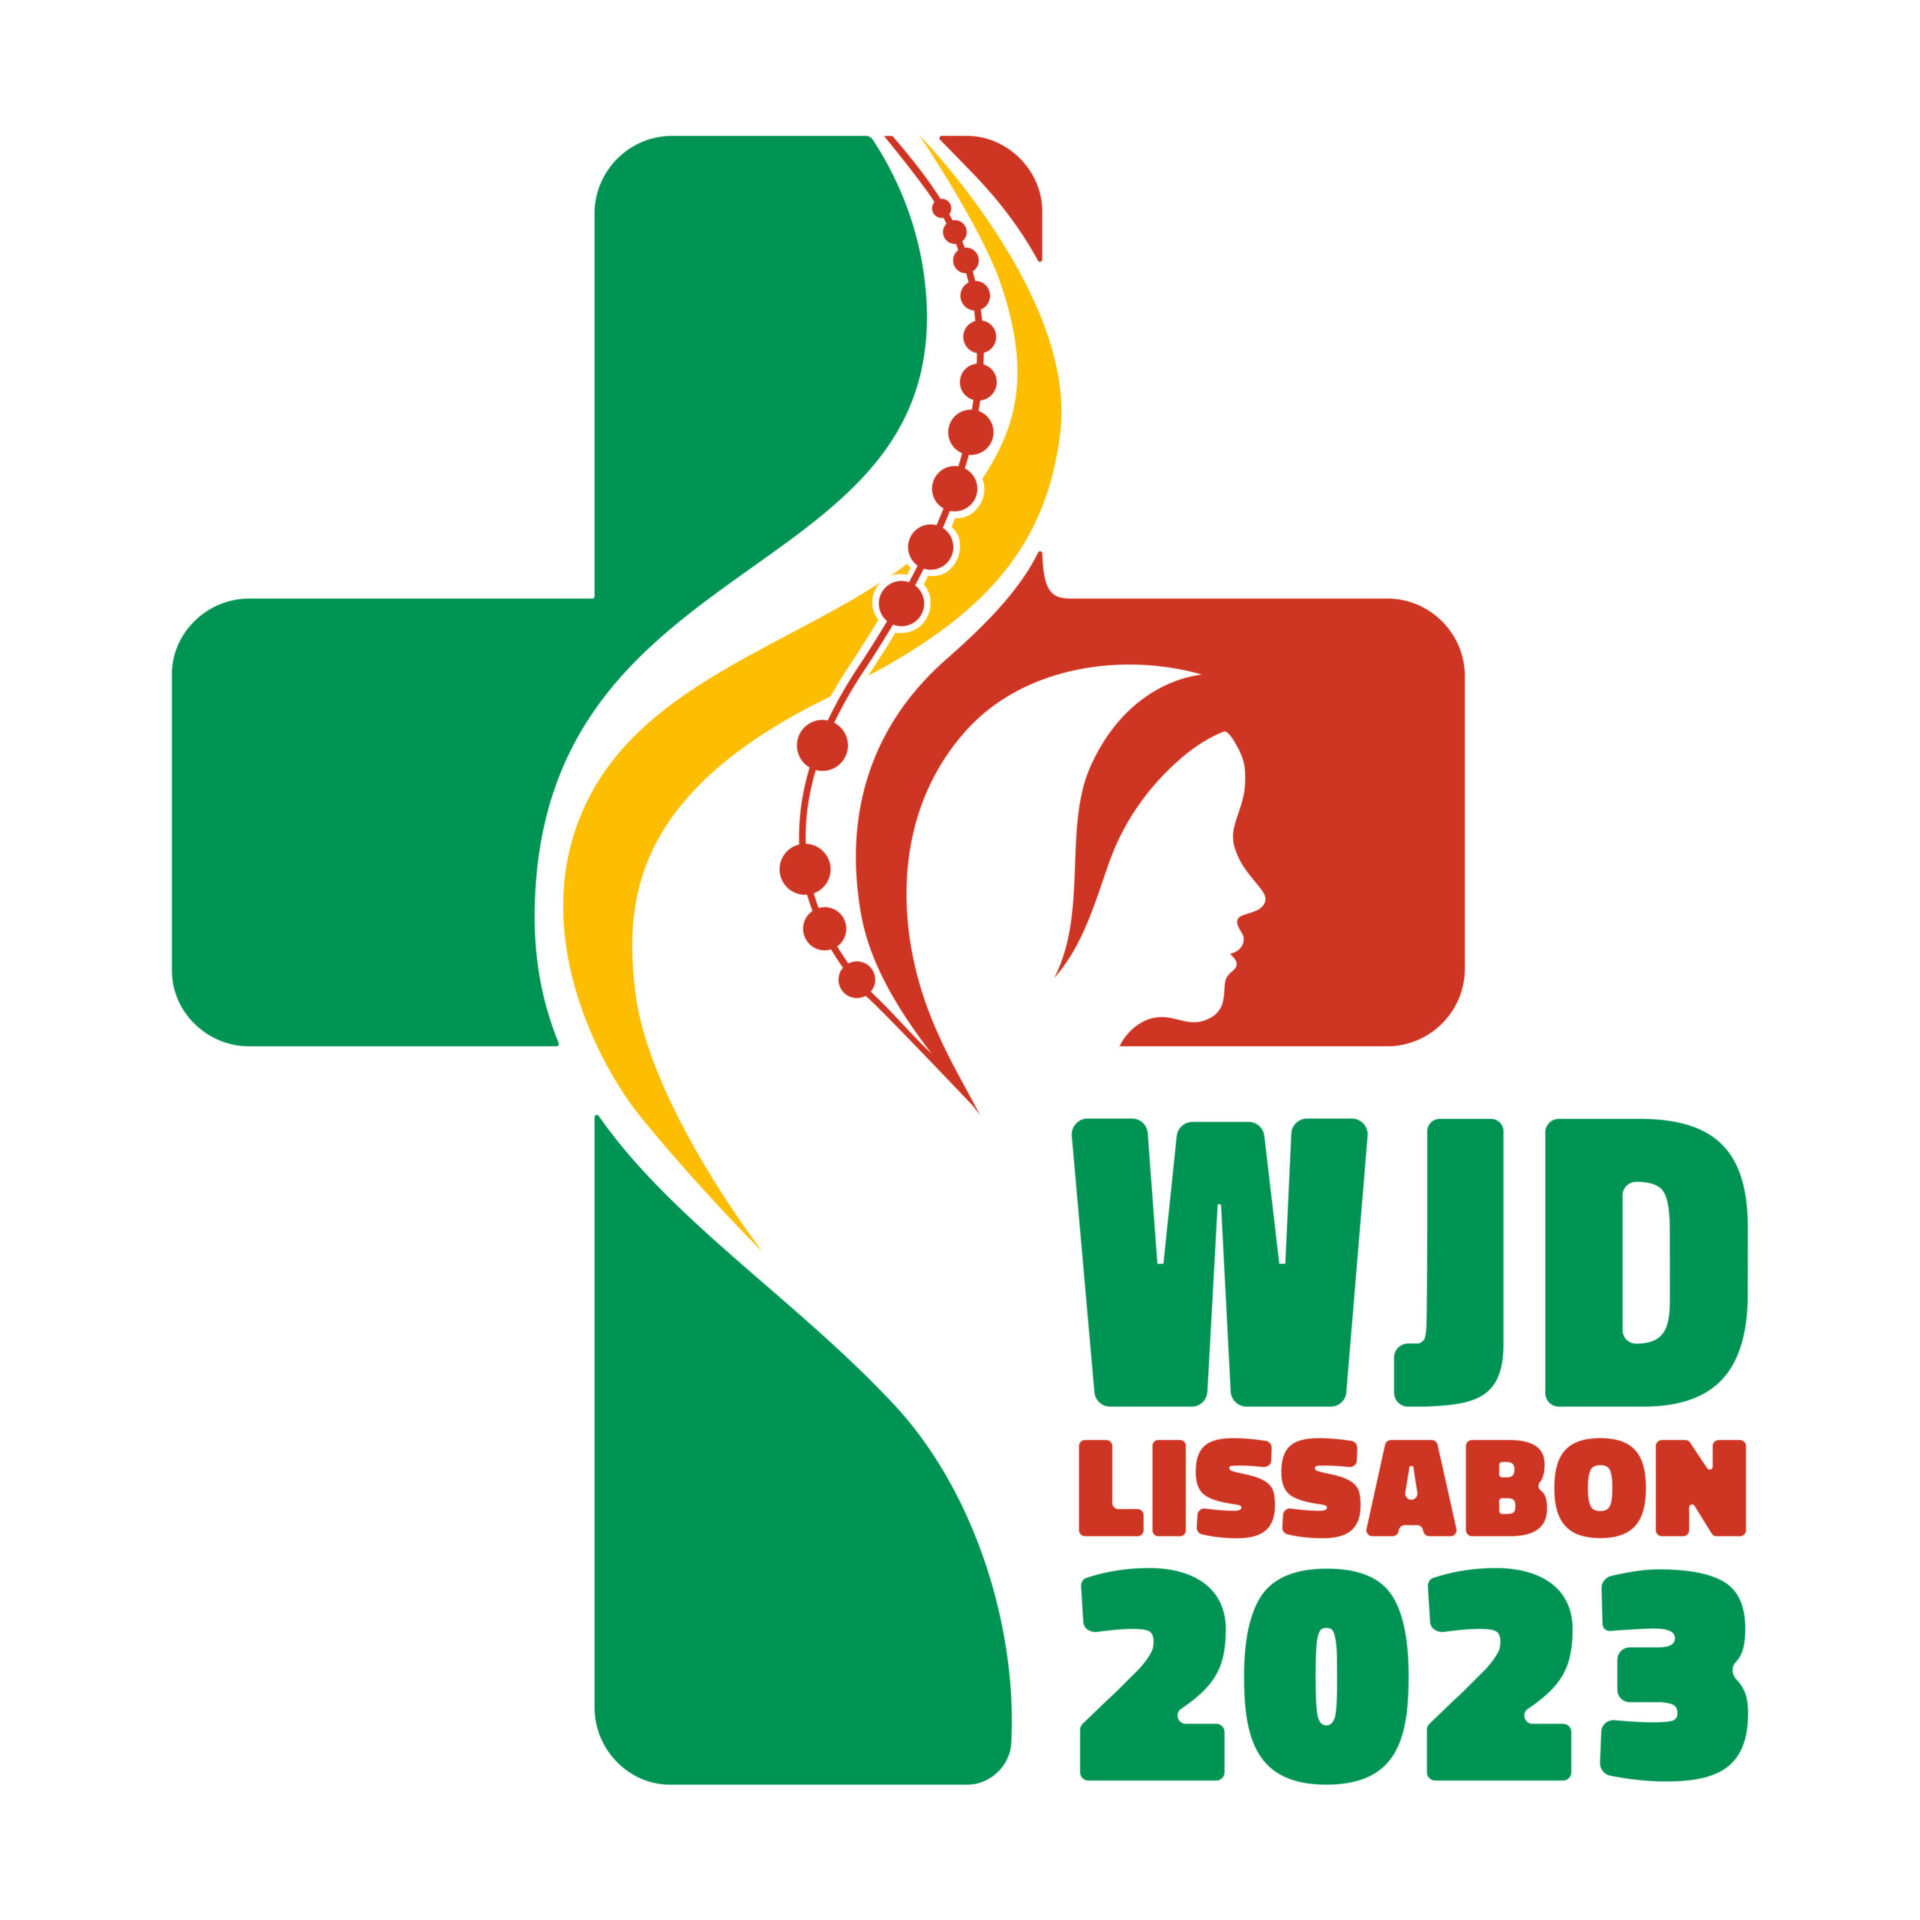 WJD - Wereldjongerendagen Lissabon 2023